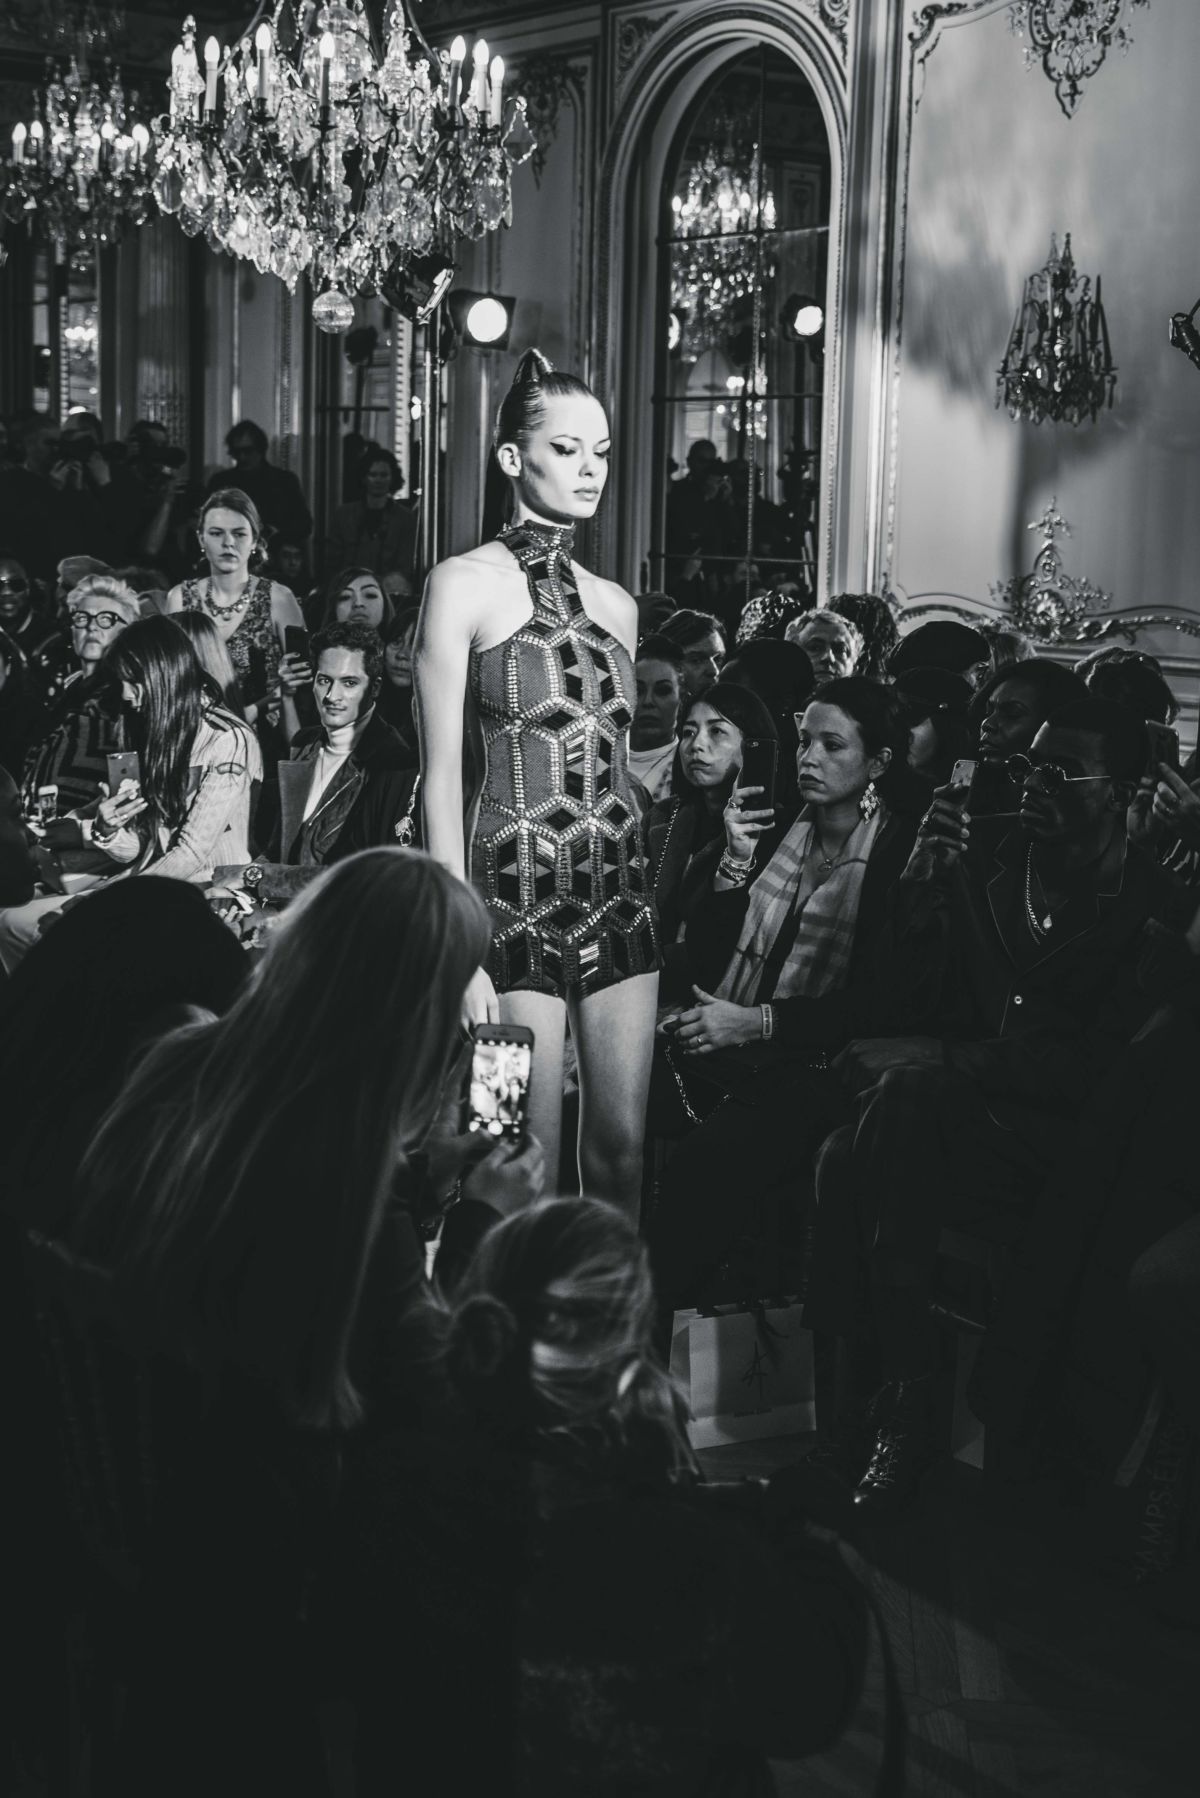 Défilé couture "Under the Shell" Paris Fashion Week janvier 2019 / Photo : Ben Hincker